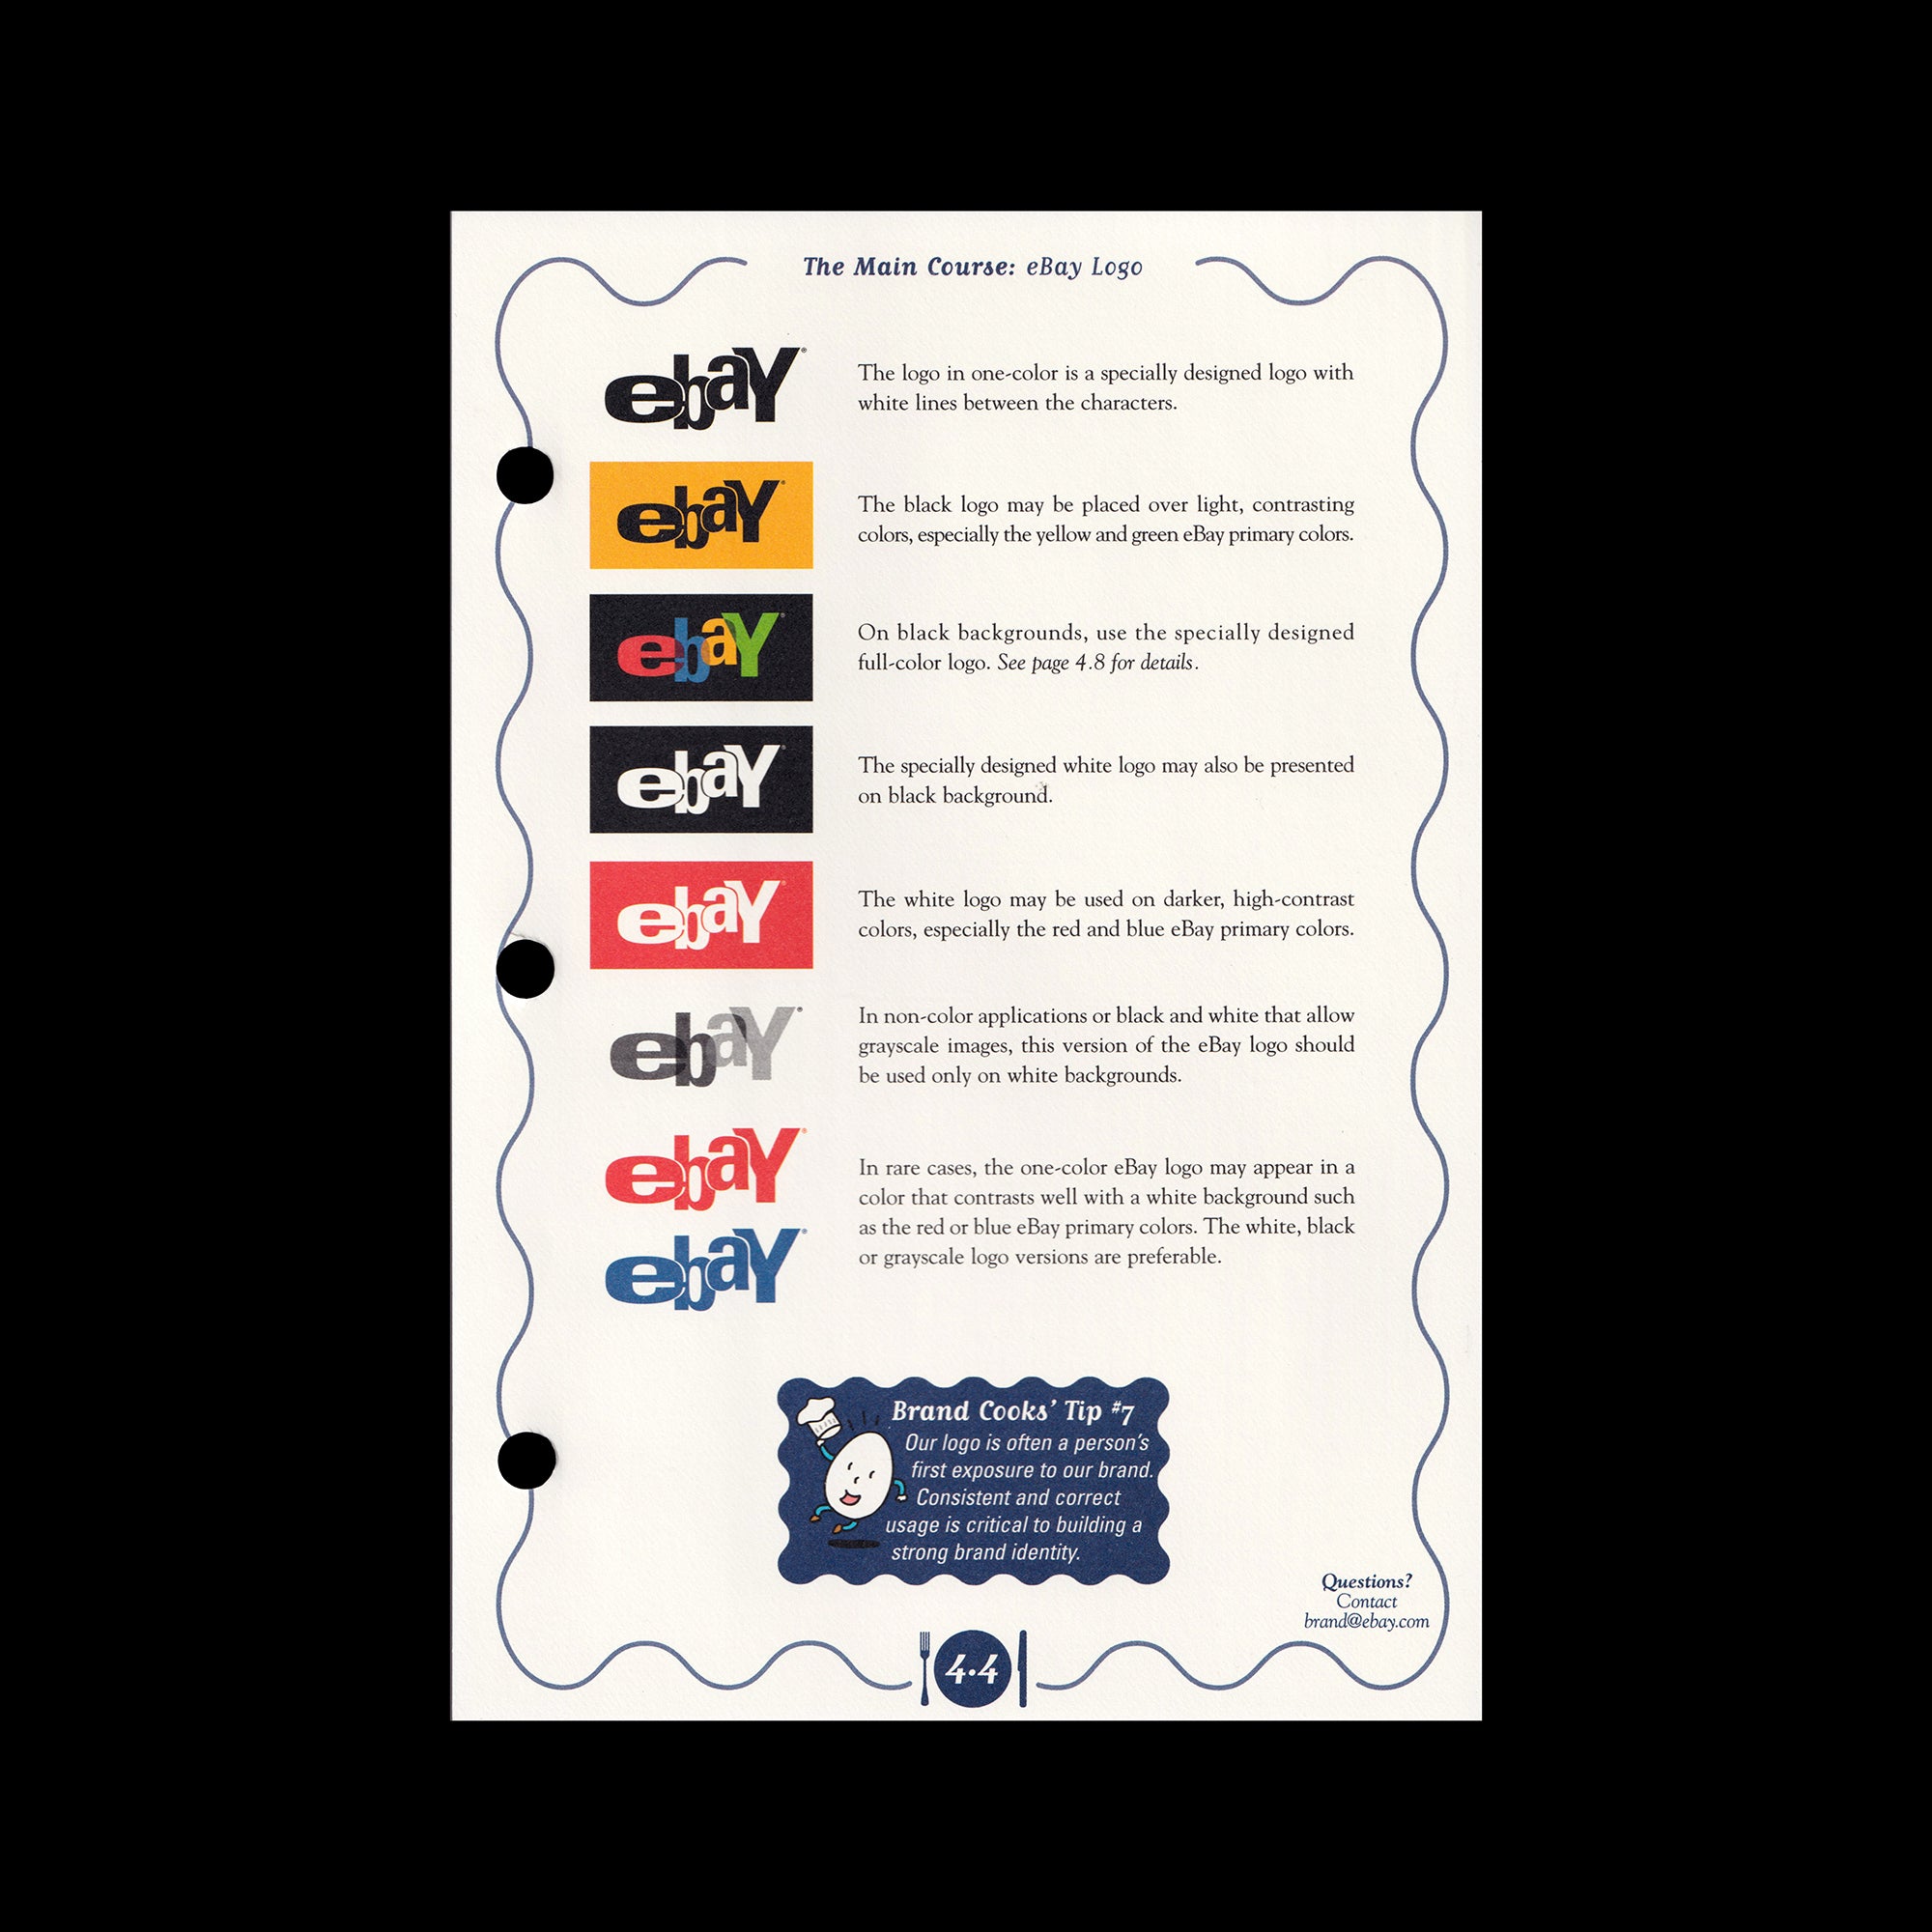 eBay Brand Guidelines, 2002